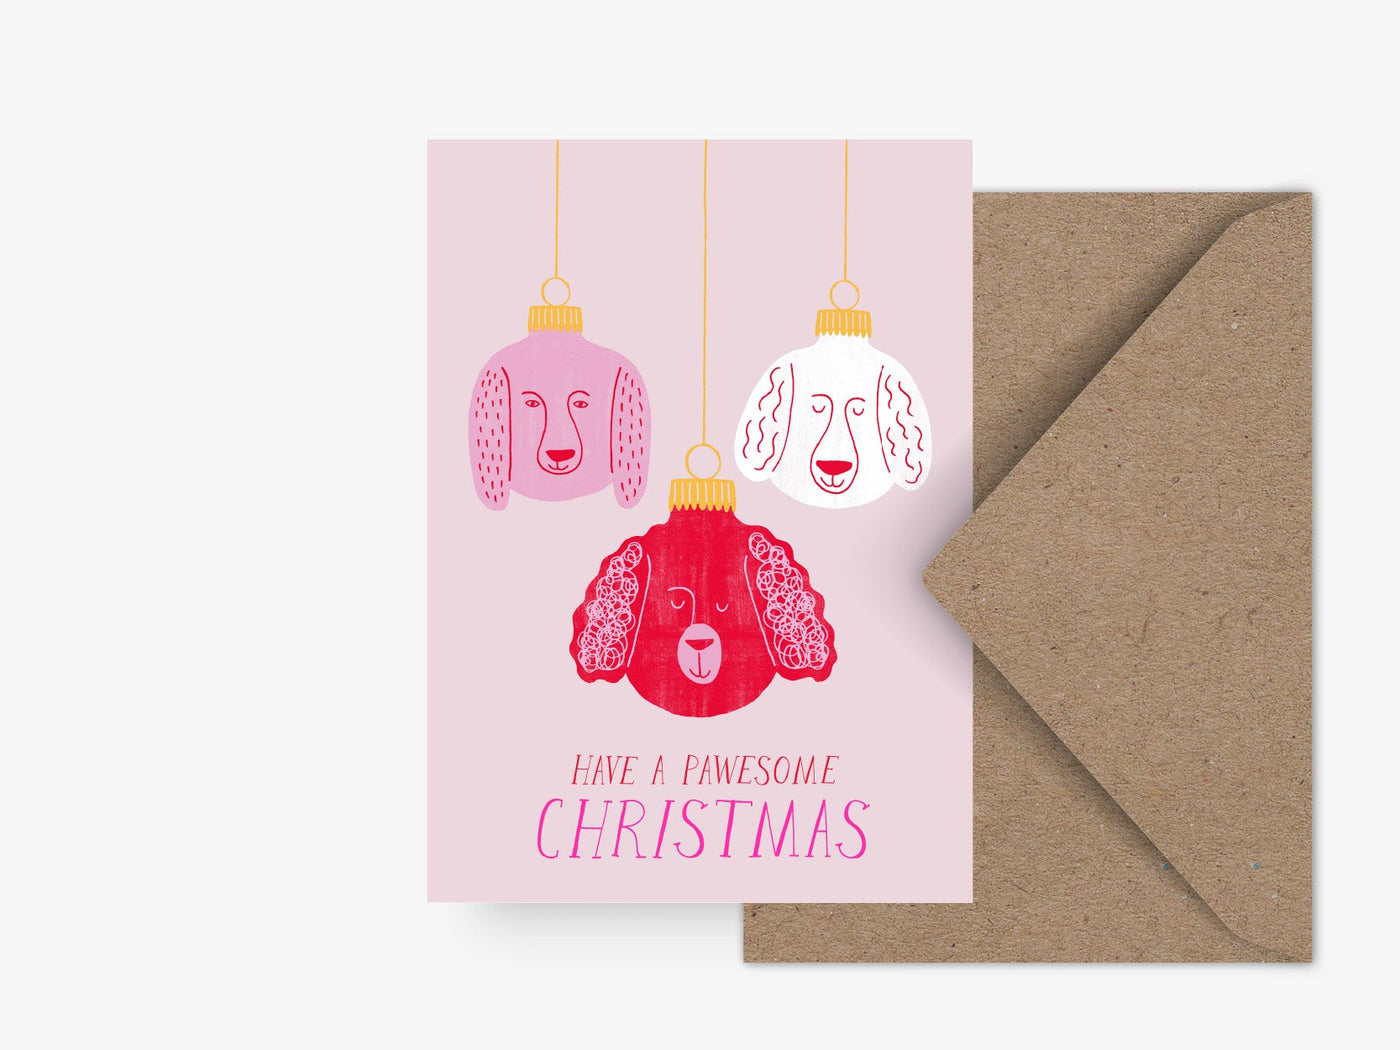 Postkarte / Pawsome Christmas